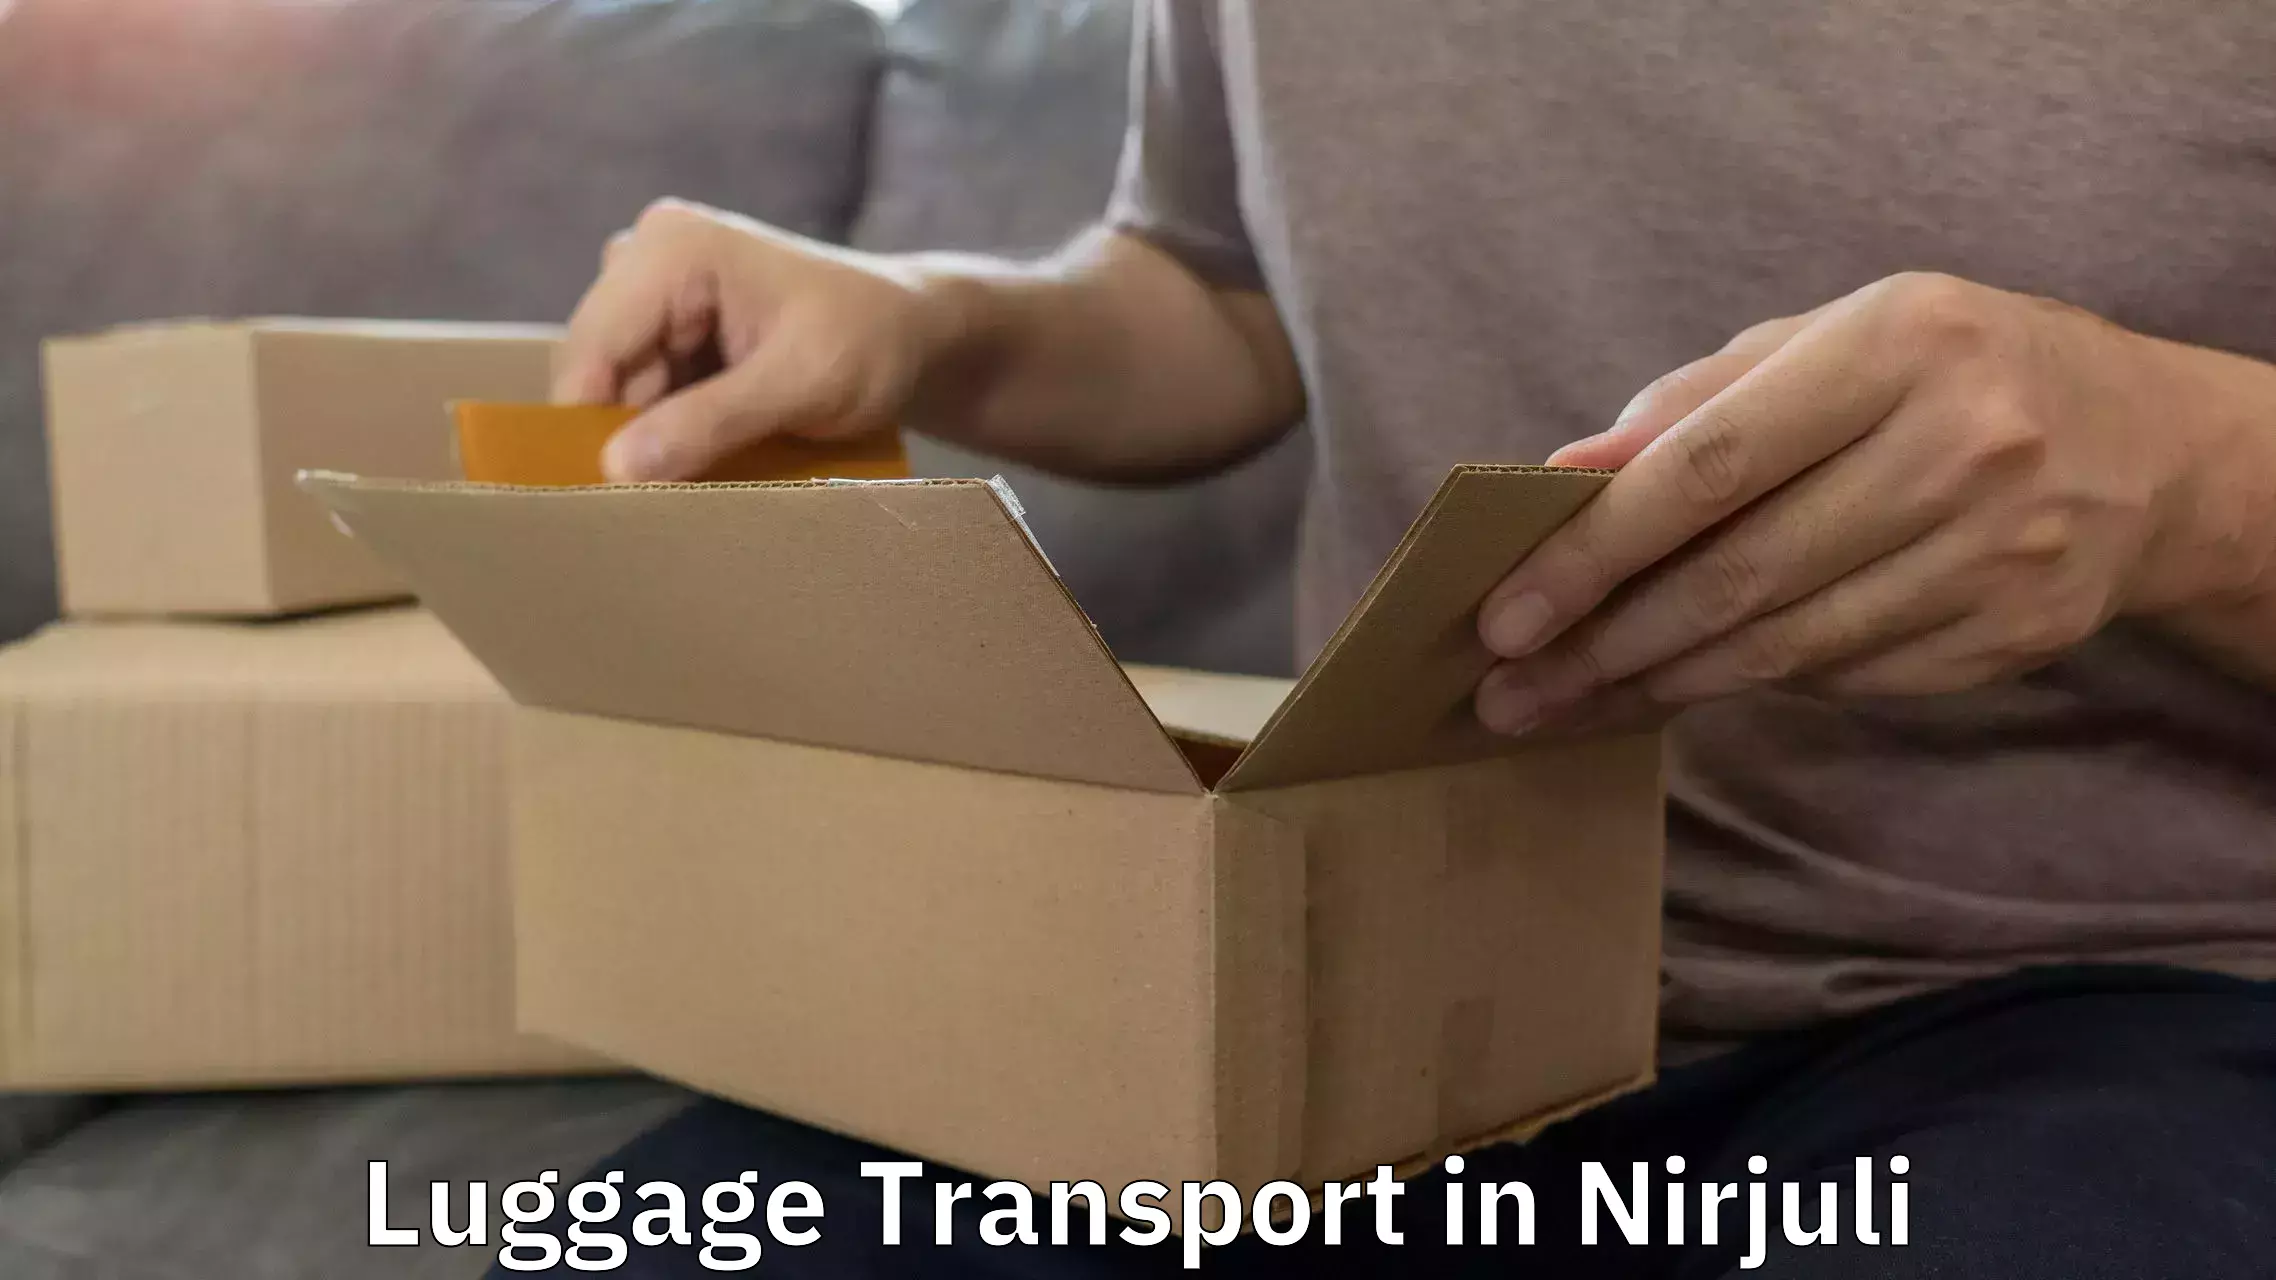 Luggage transport schedule in Nirjuli